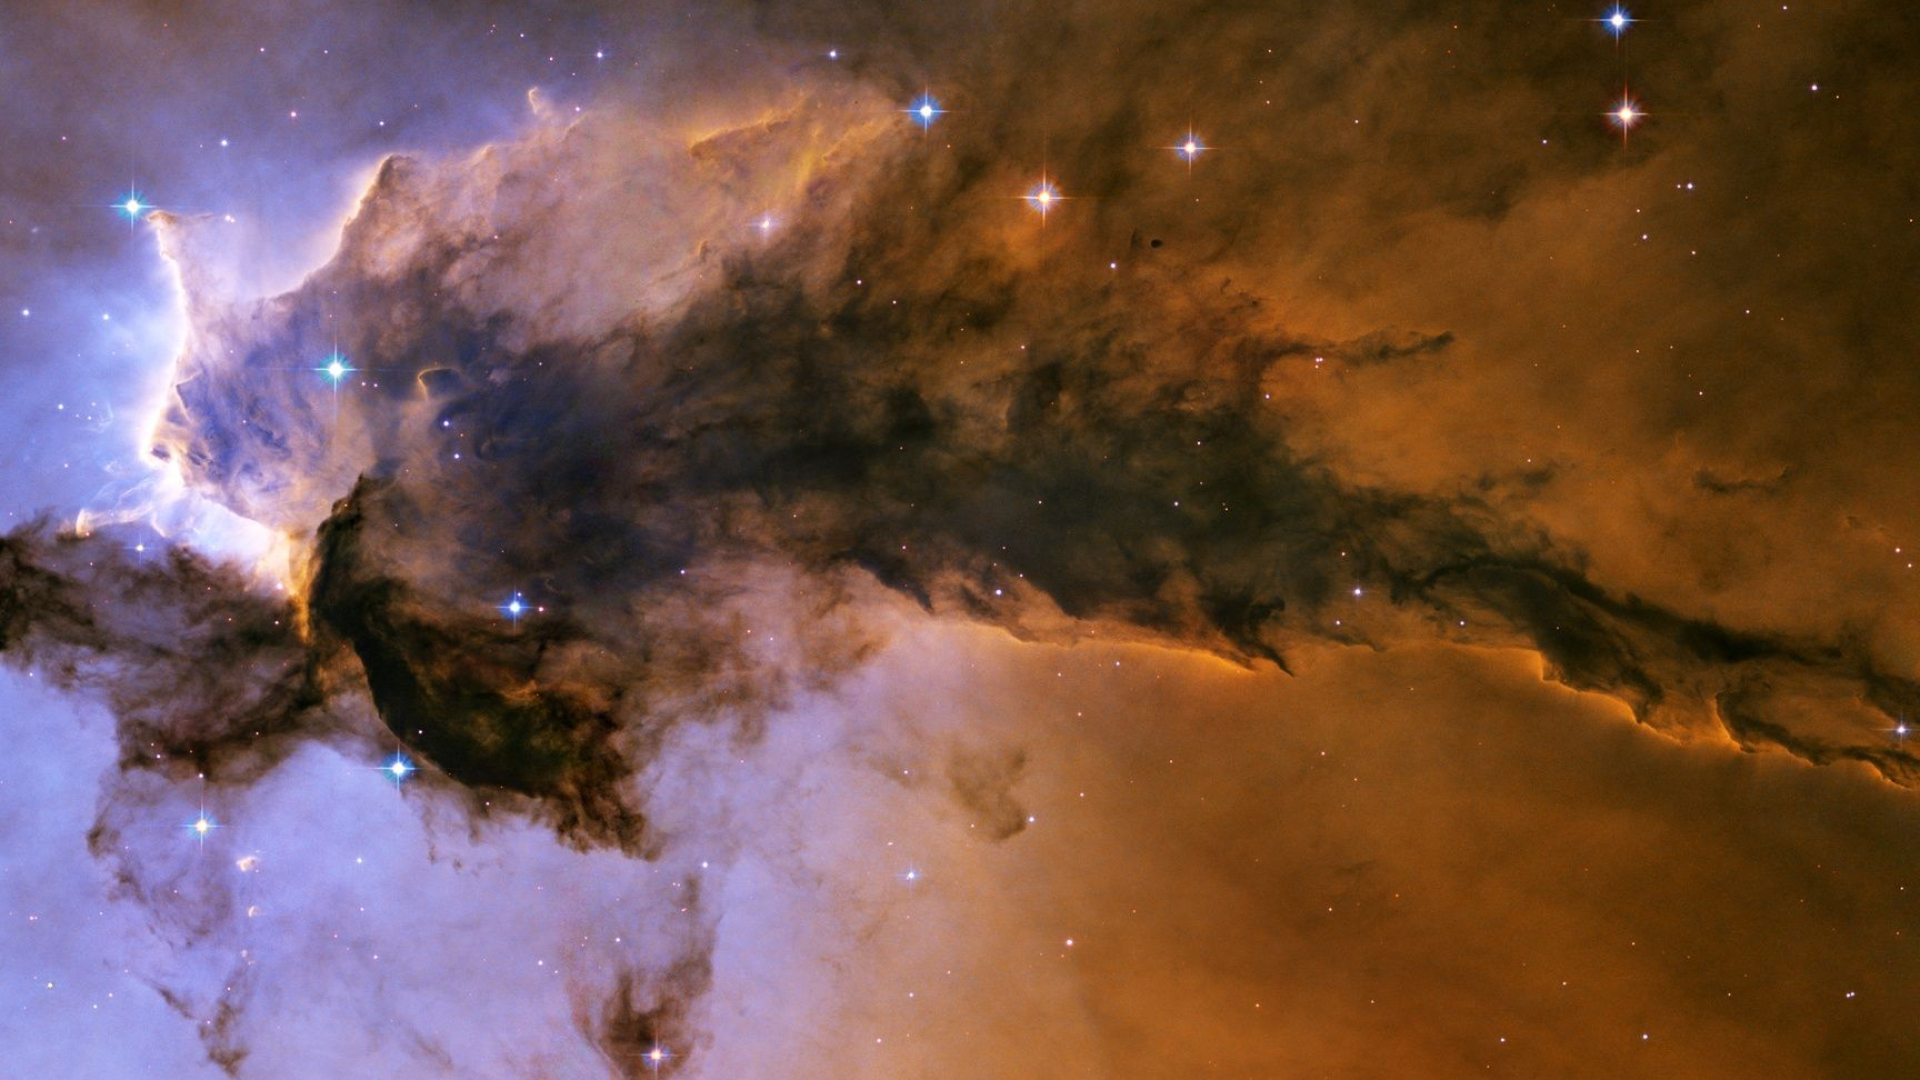 1920x1080 Eagle Nebula HD desktop wallpaper : High Definition : Fullscreen ... | Nebula wallpaper, Eagle nebula, Nebula